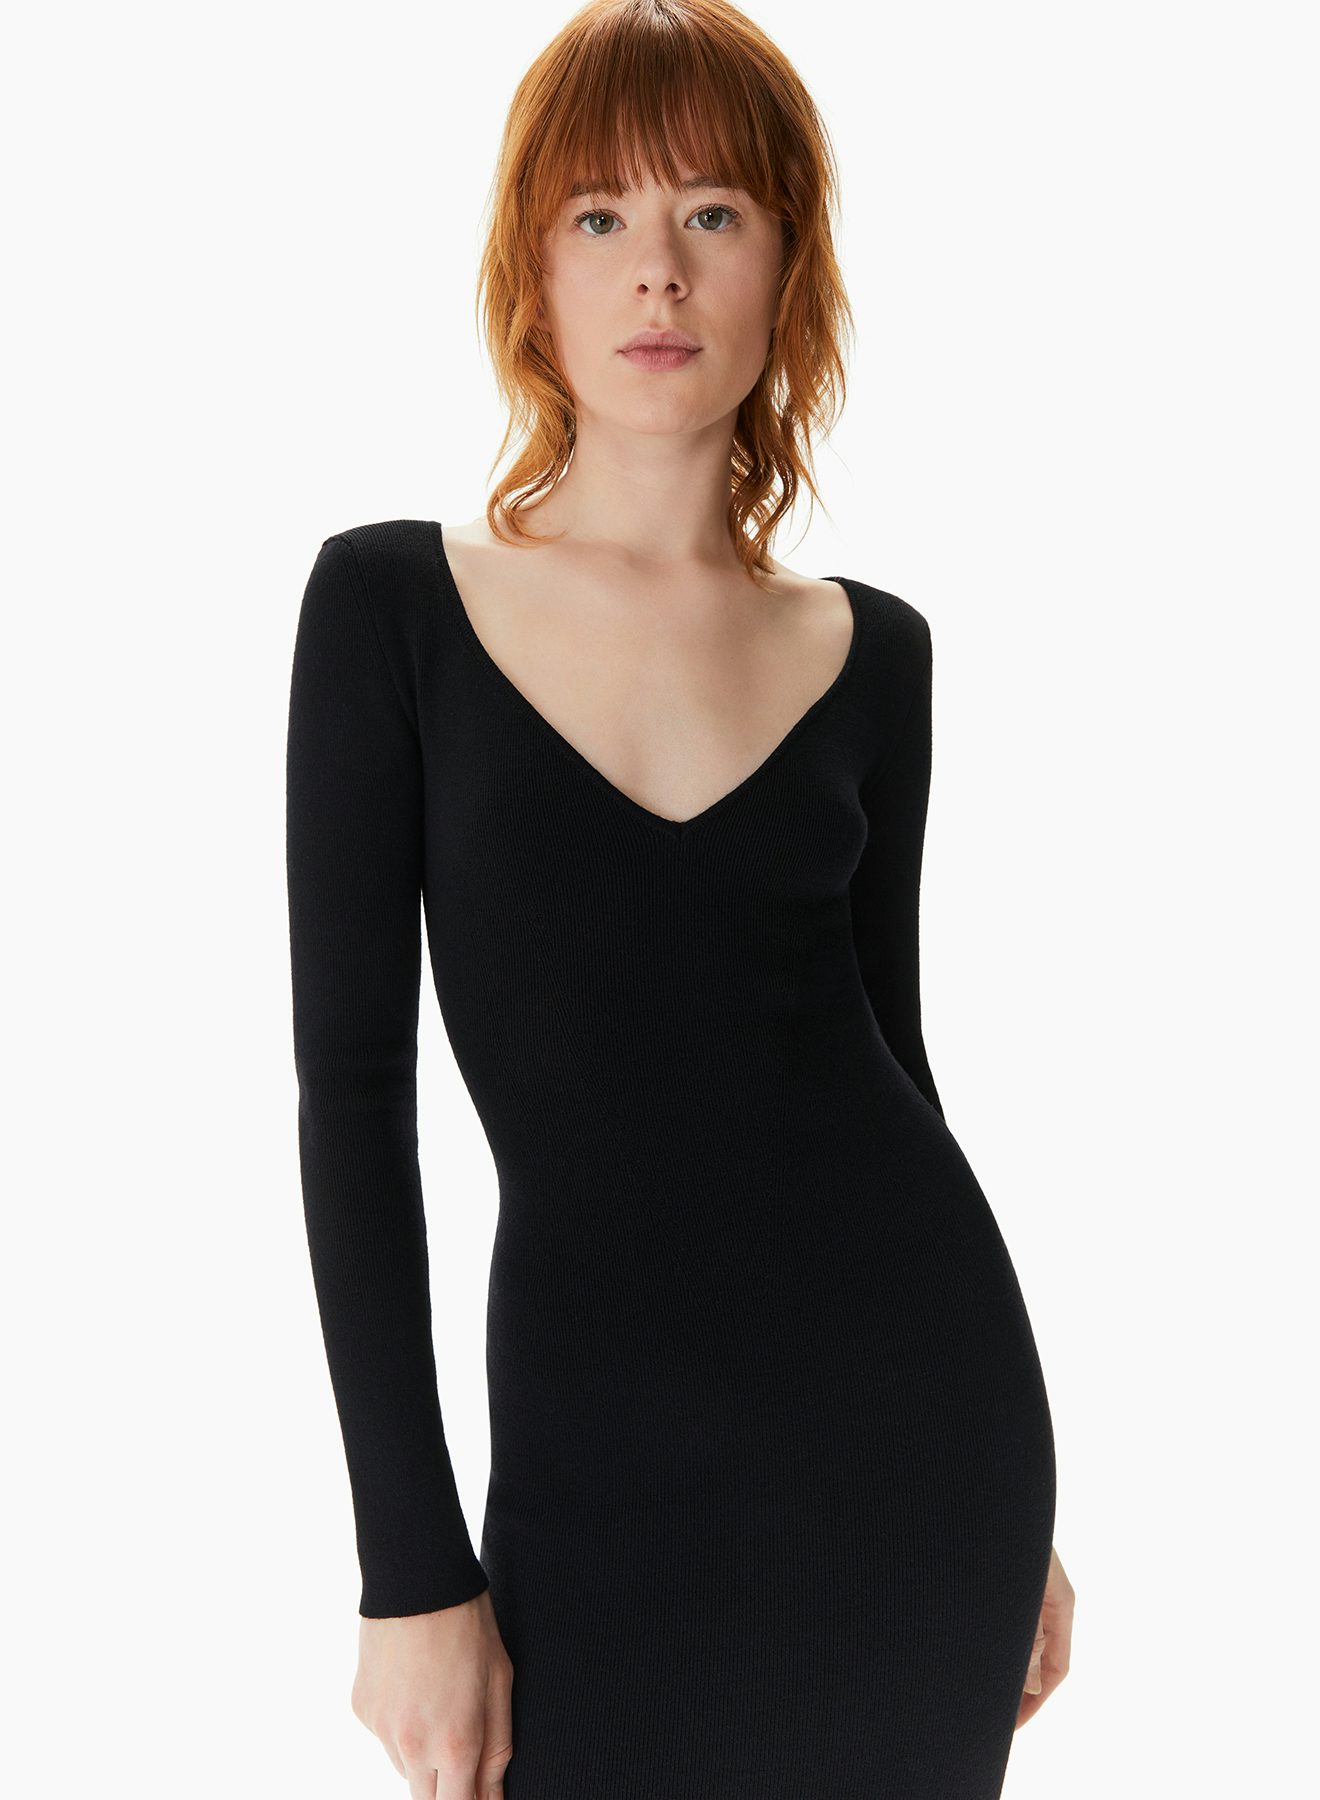 Fitted Knit Midi Dress Black - Nina Ricci 